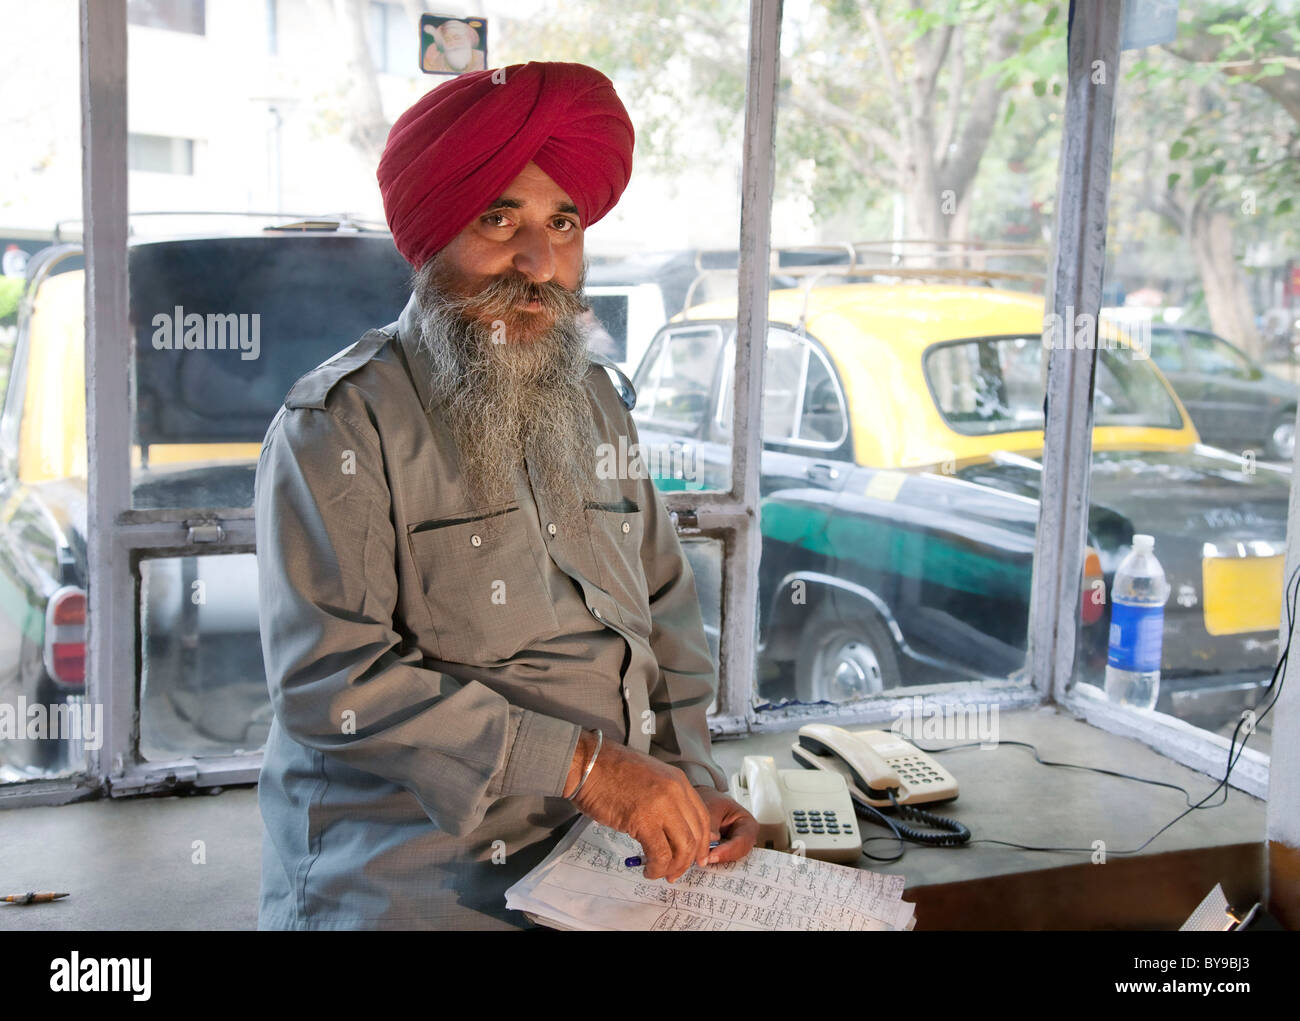 Retrato de un taxista sij Foto de stock